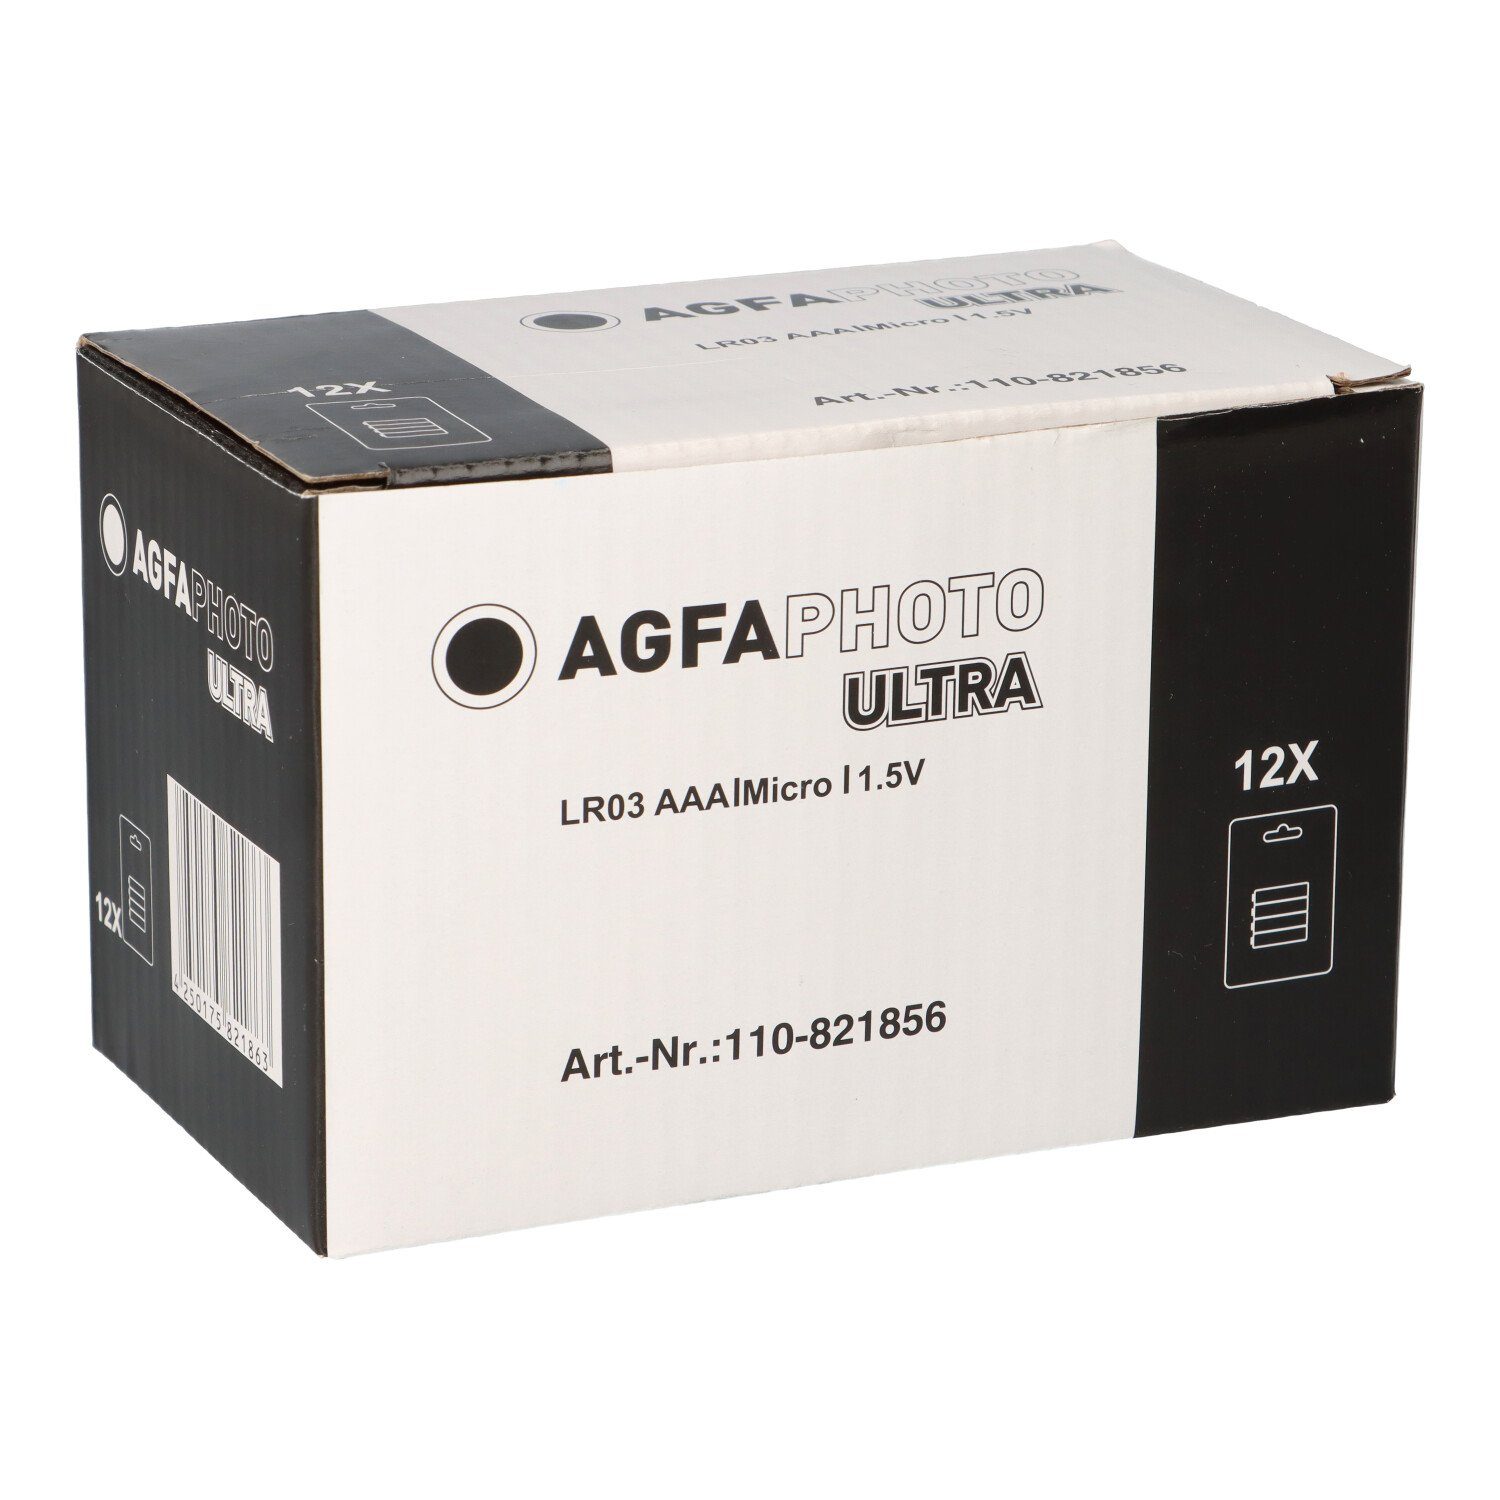 AgfaPhoto AGFAPHOTO Batterie Ultra AAA 1.5V 48 Stück 12x 4er Blister Batterie